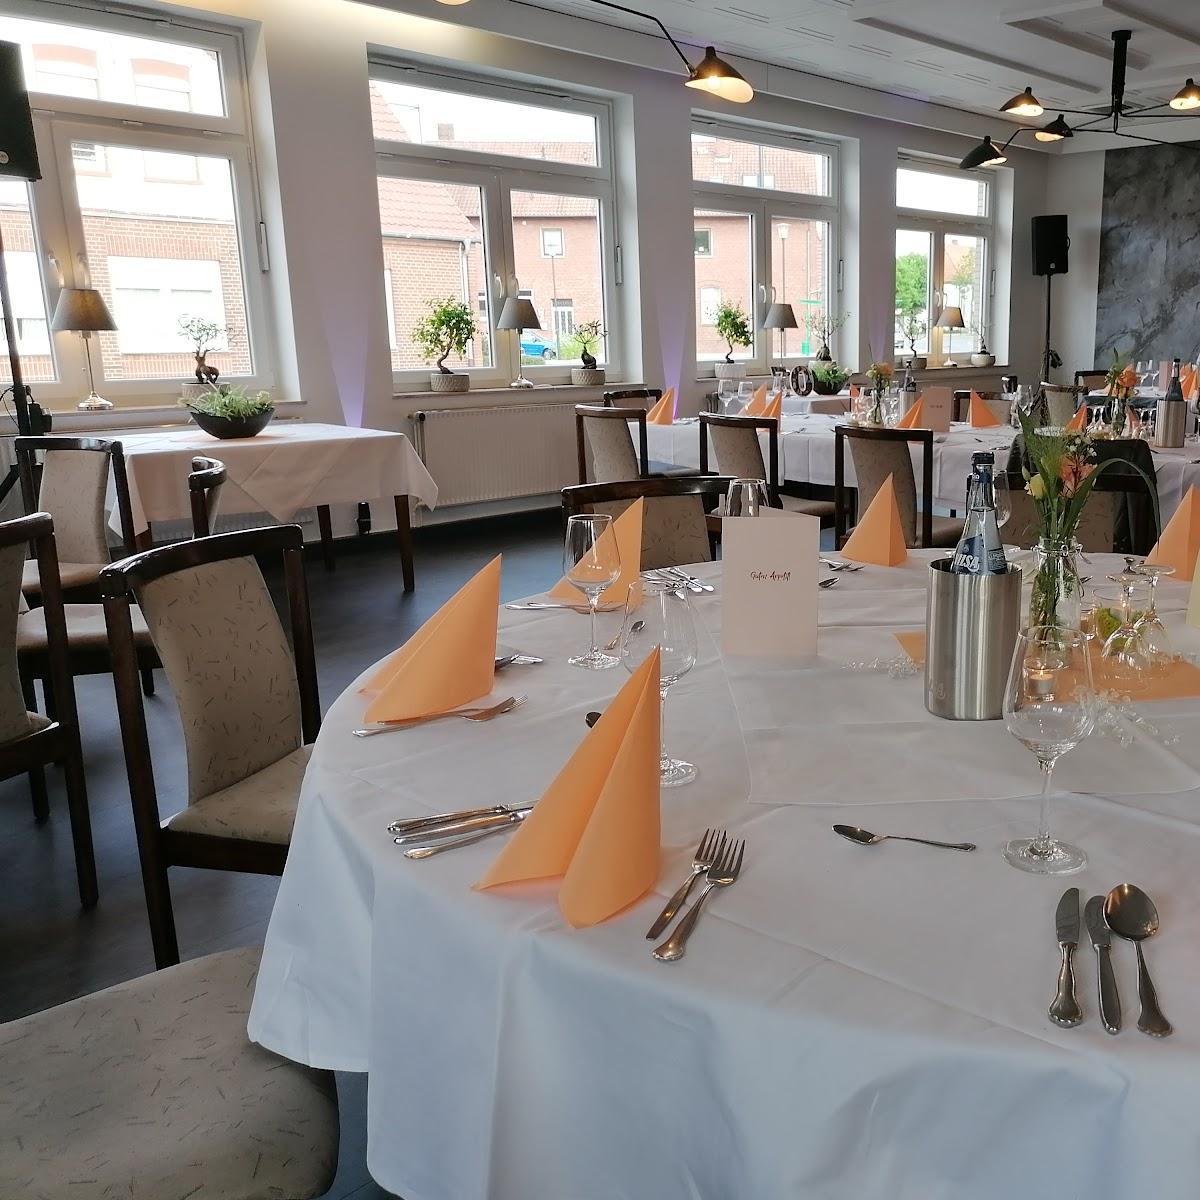 Restaurant "Landgasthaus Maschmann" in Barenburg